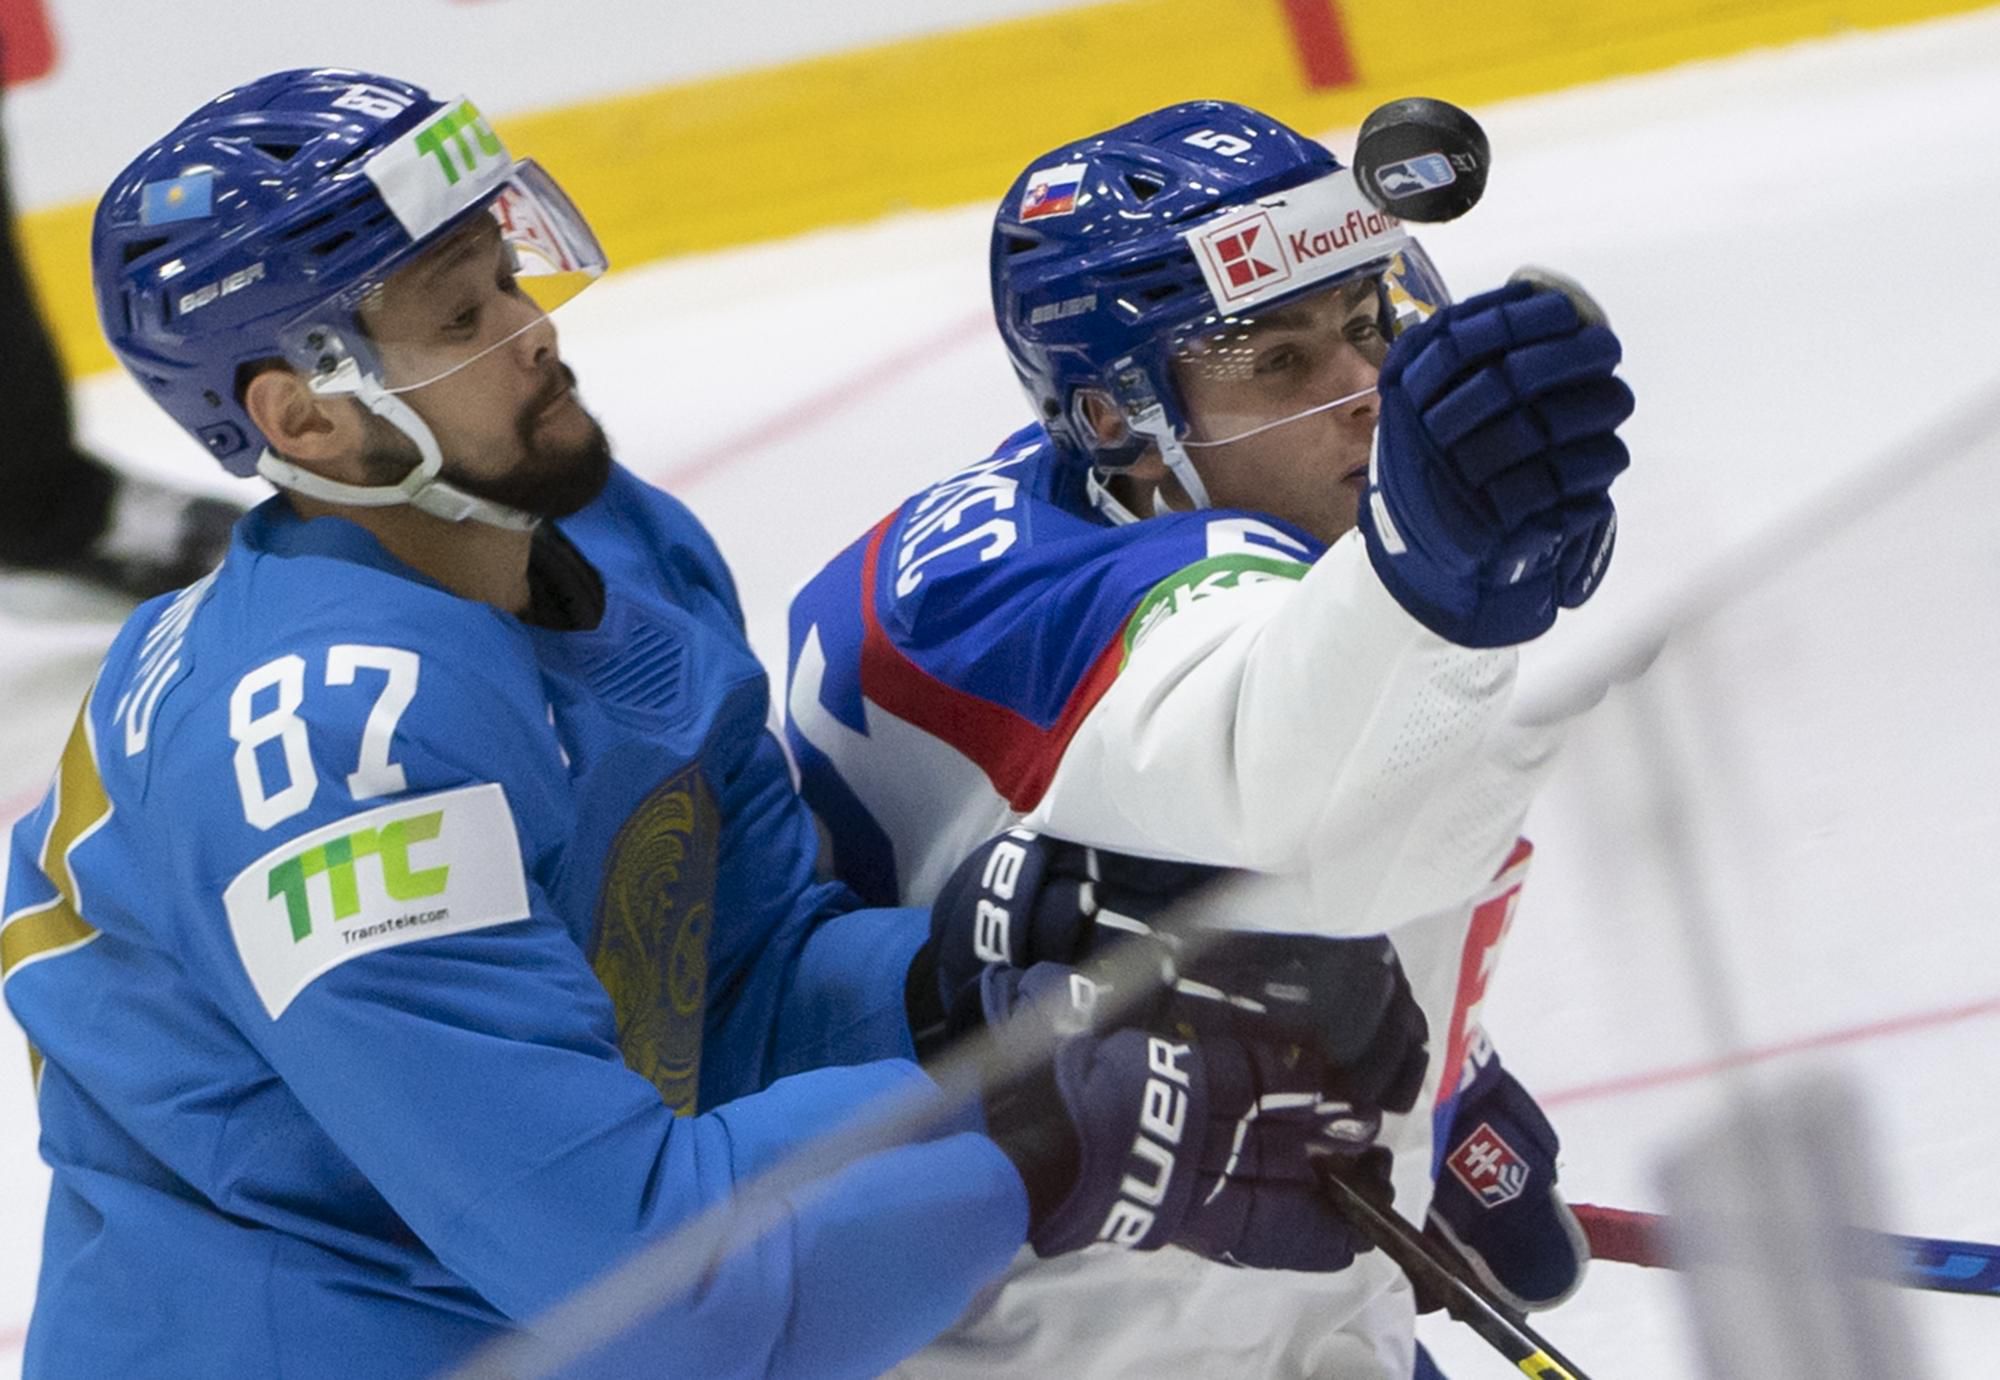 MS v hokeji 2022: Kazachstan - Slovensko (Adil Beketajev, Šimon Nemec)